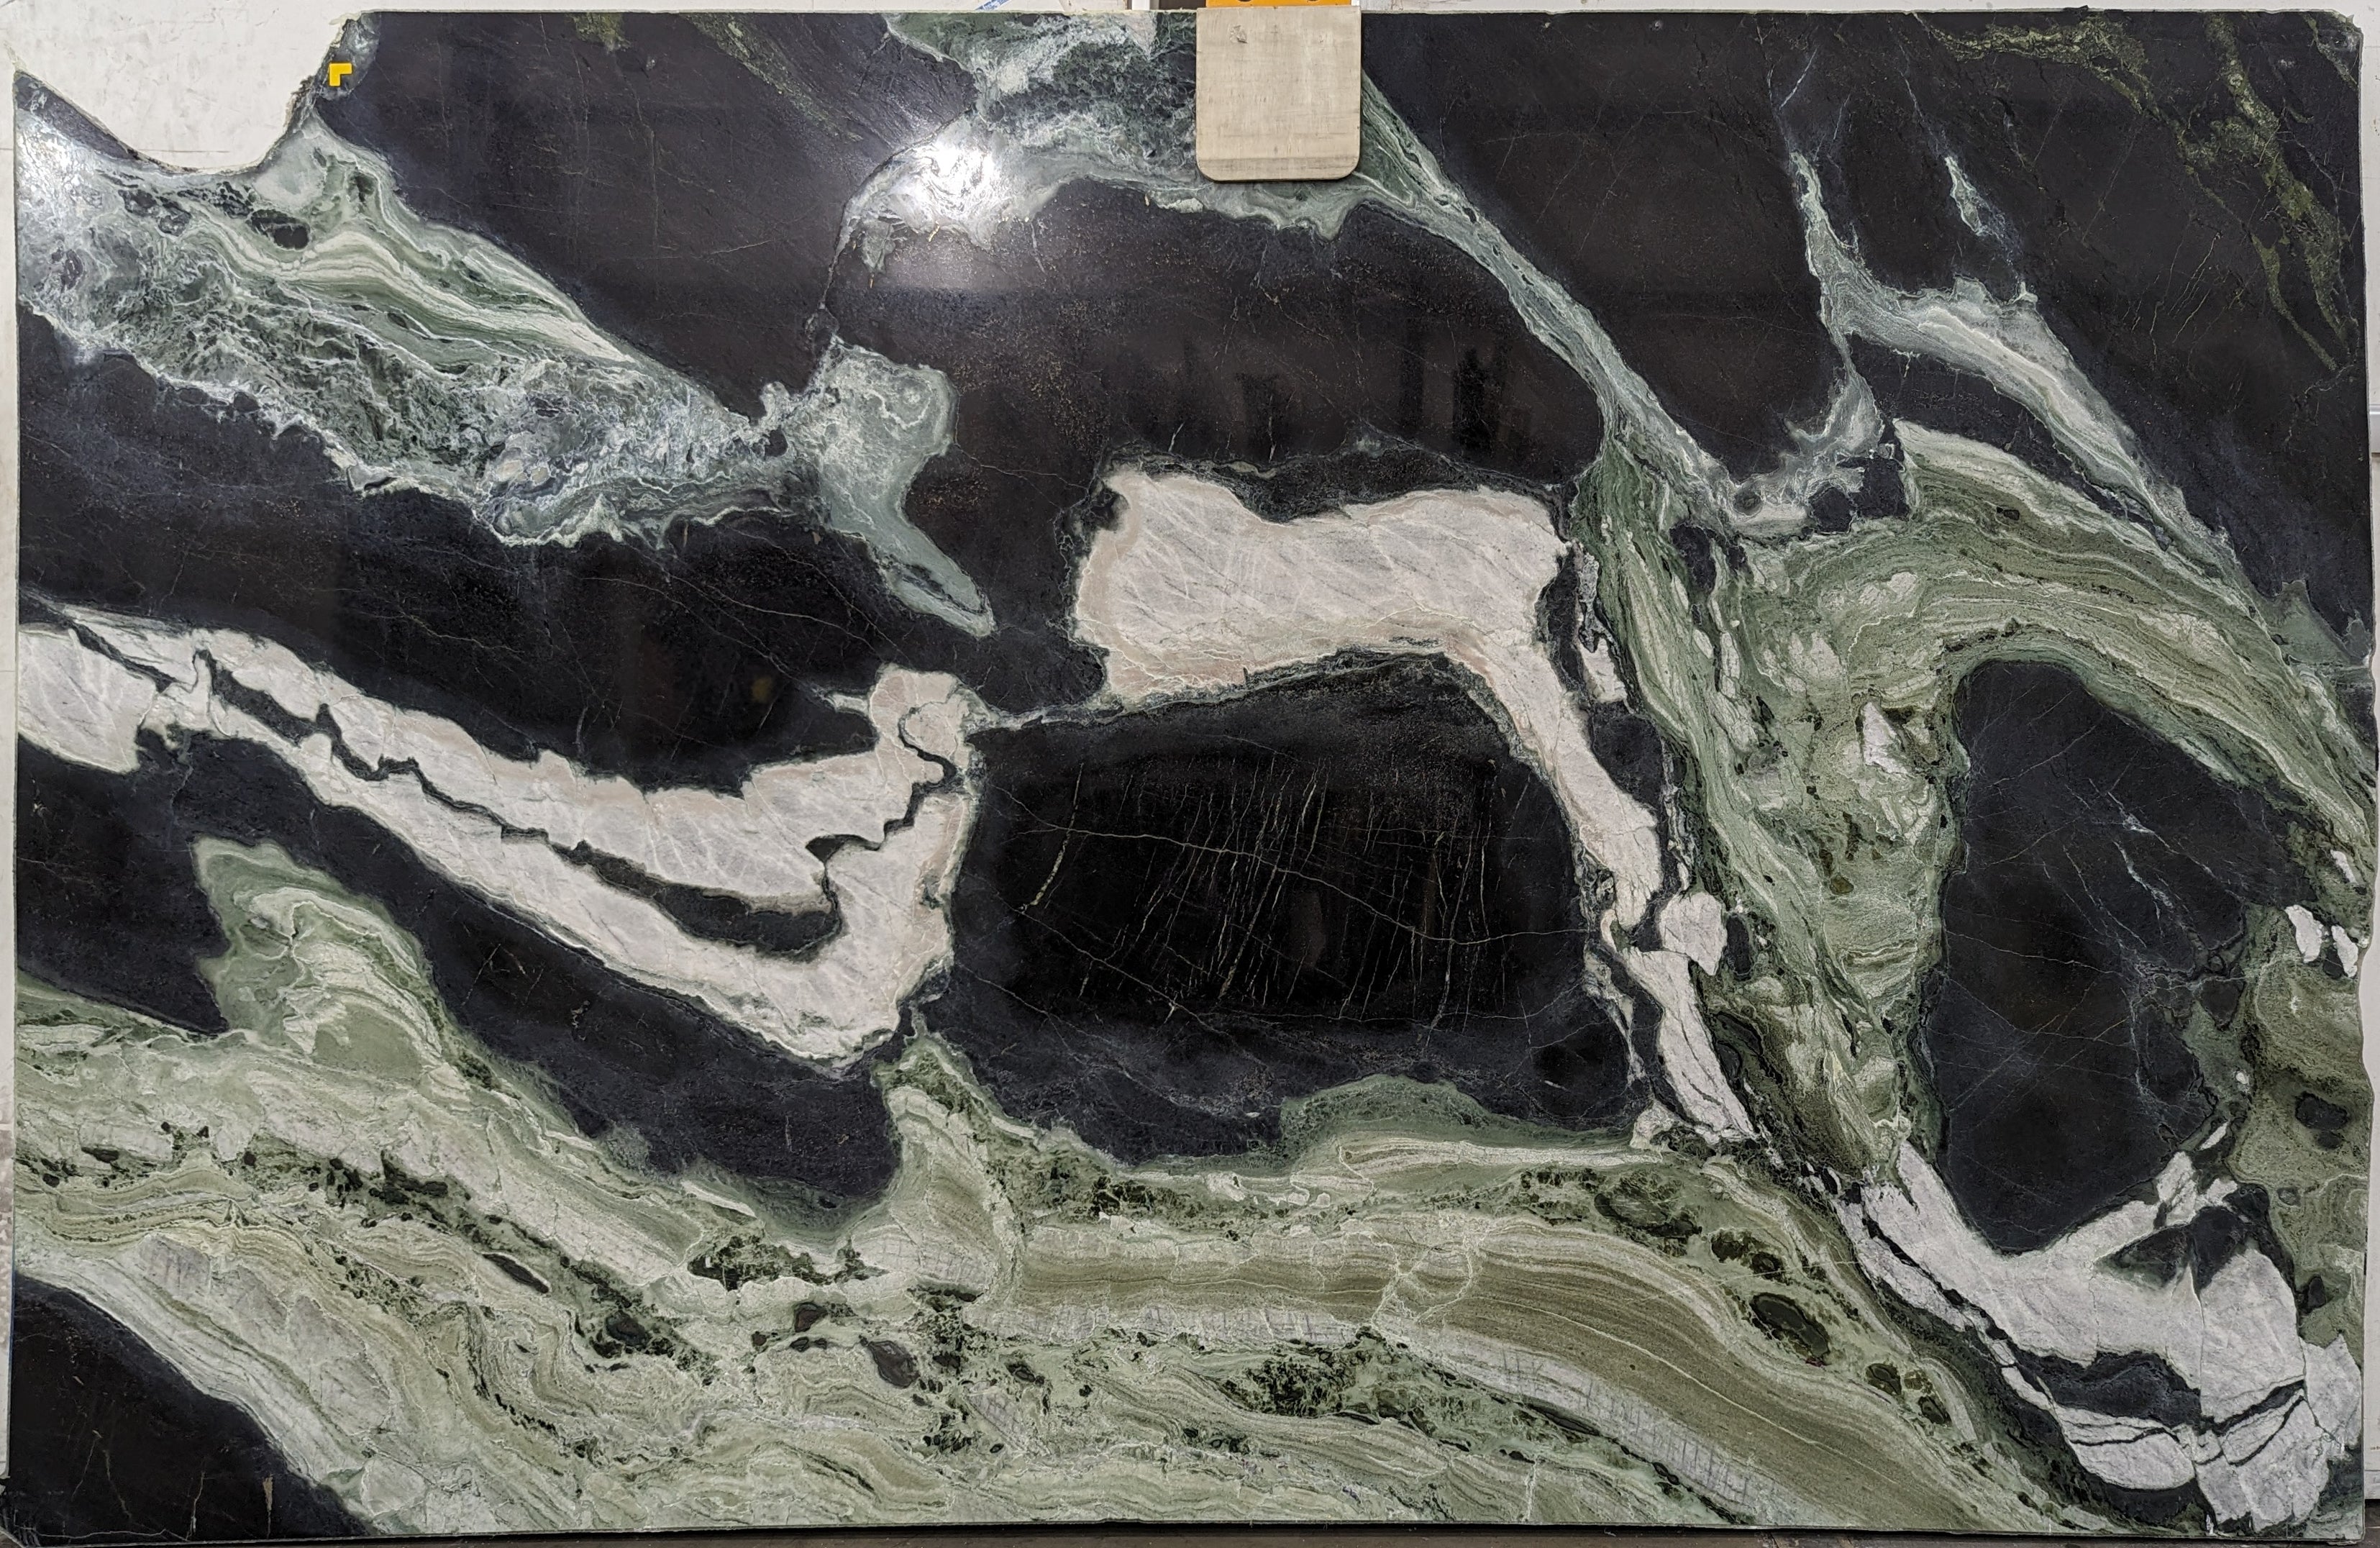  White Jade Marble Slab 3/4  Polished Stone - 38822#03 -  75X104 